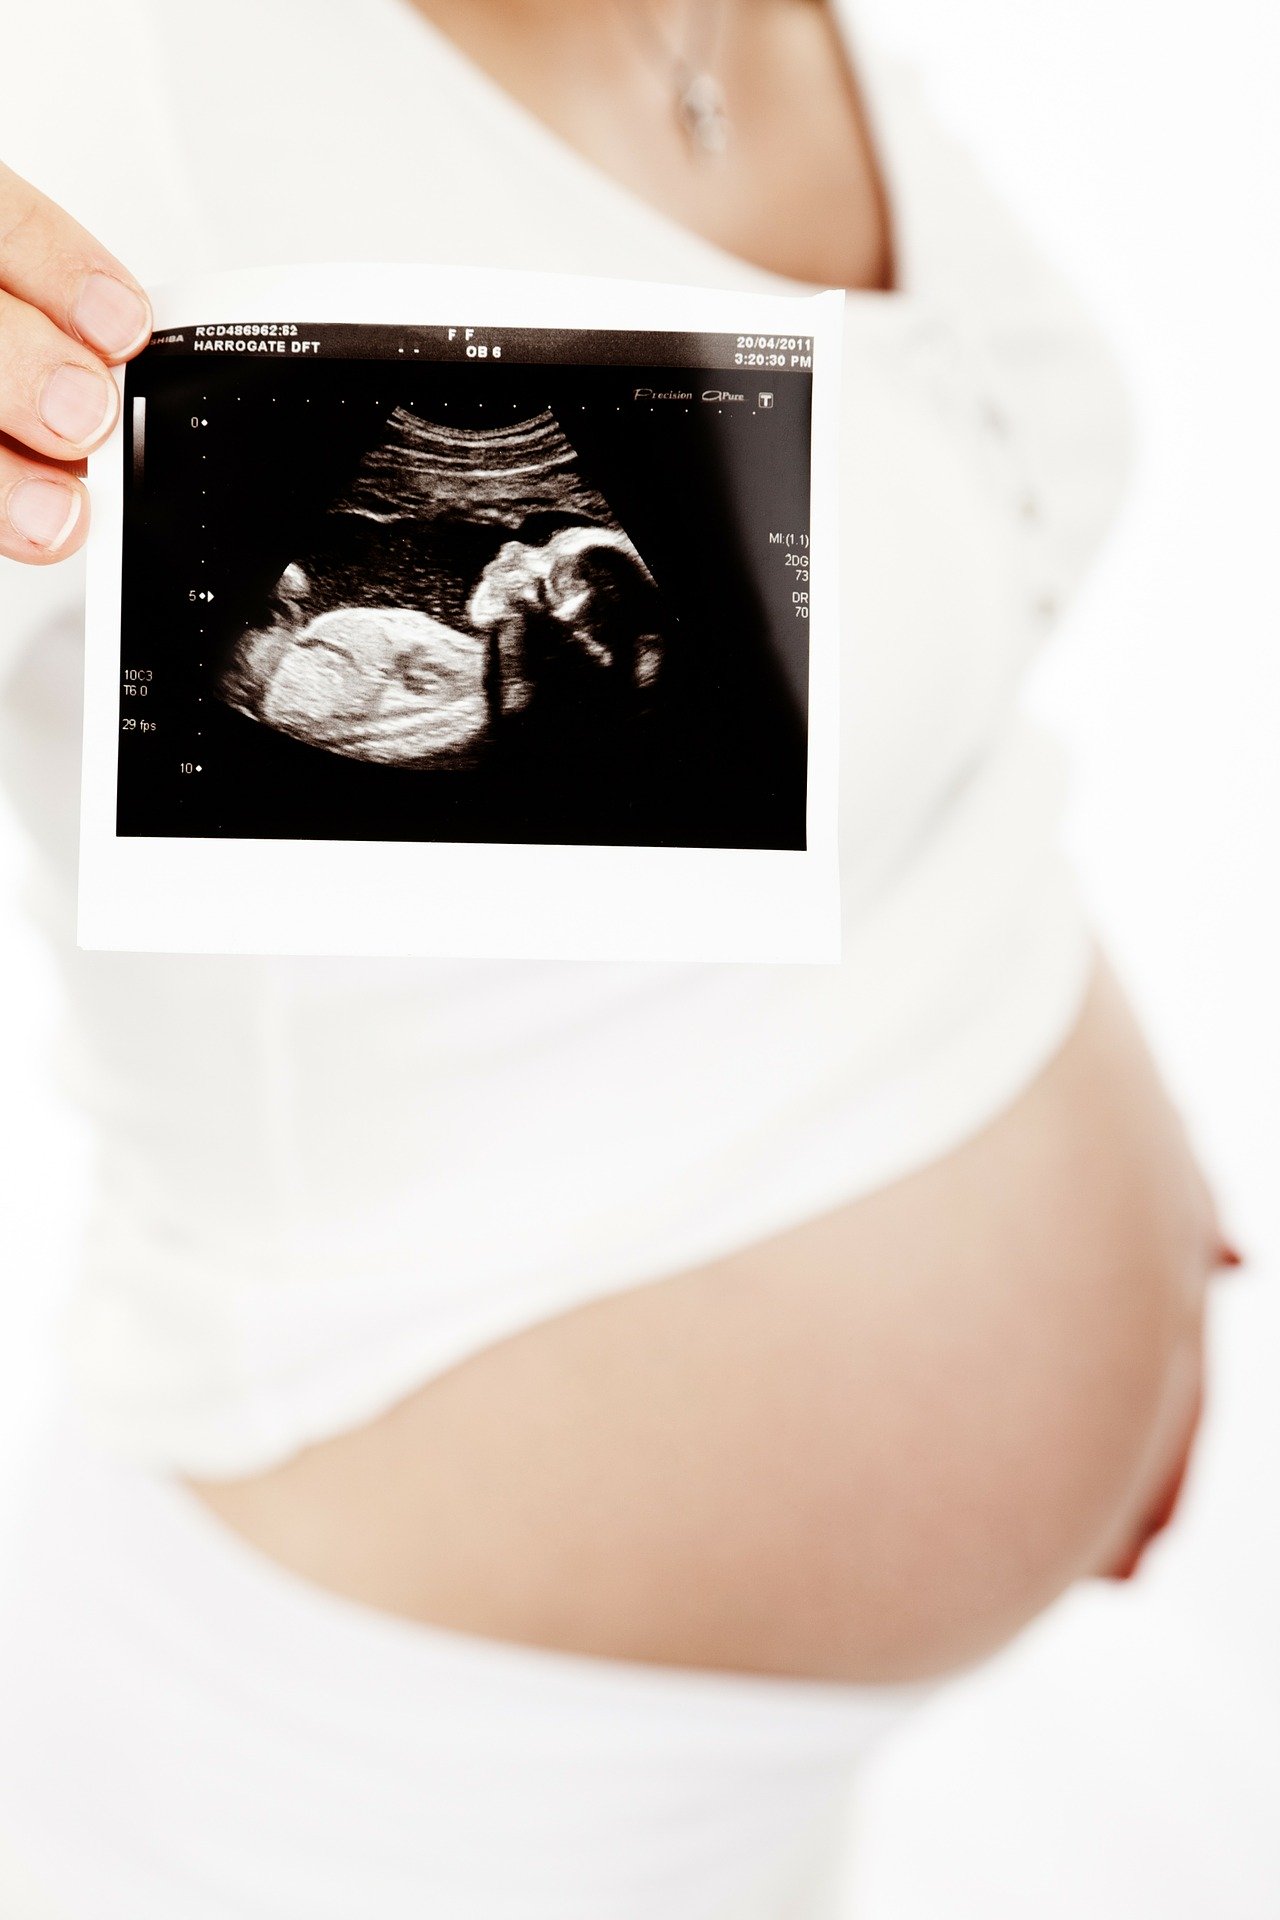 3 tydzień ciąży, planowanie ciąży, badanie usg, 1trymestr , licencja CC-BY-SA-4